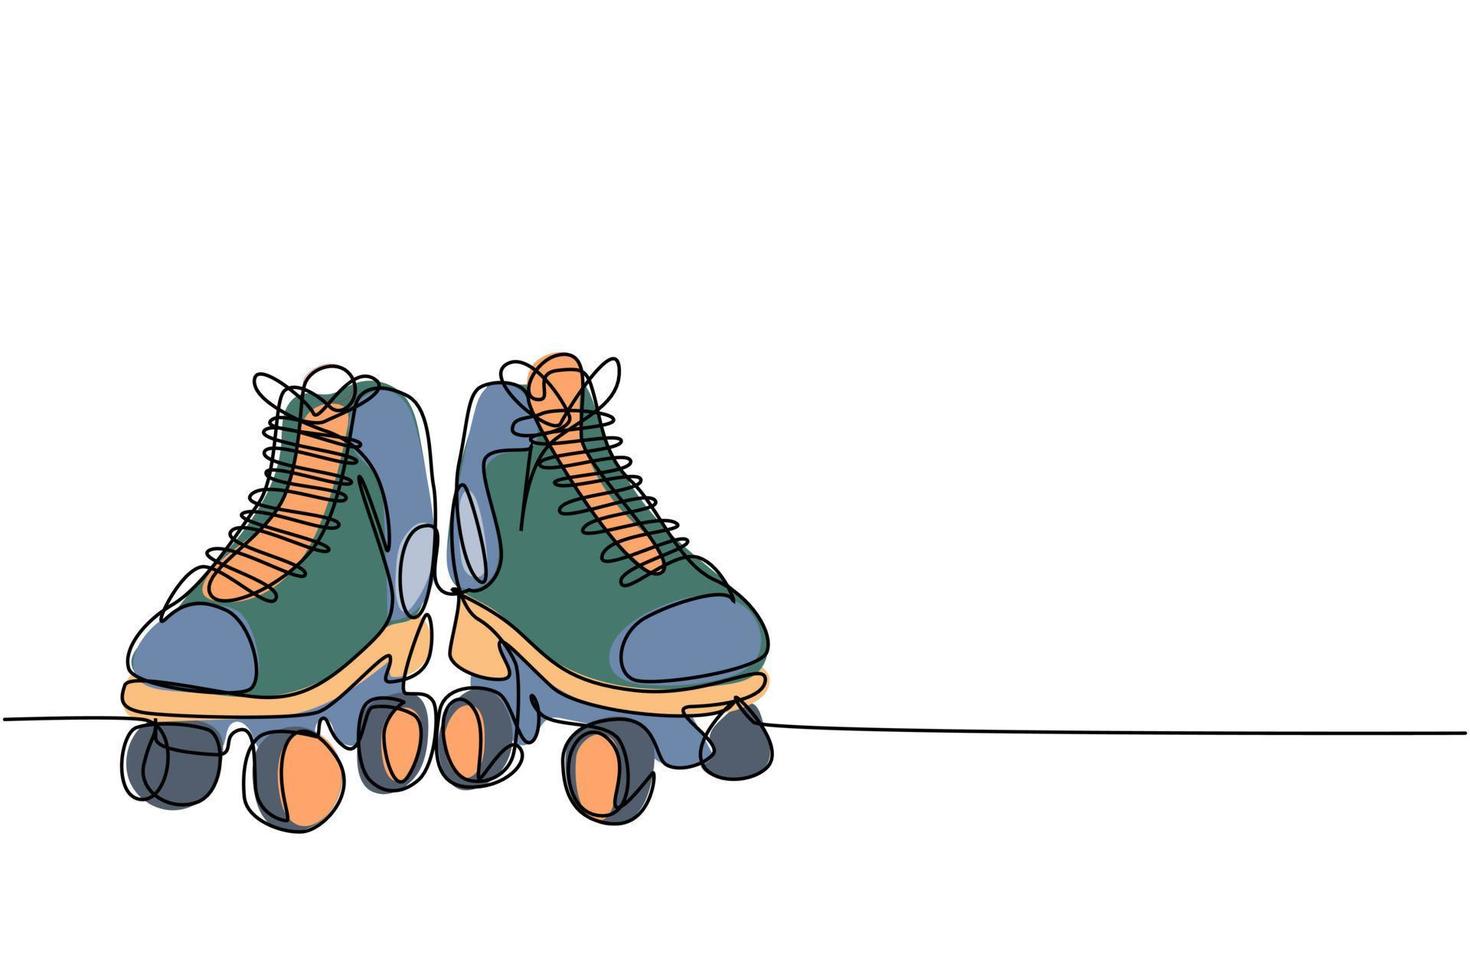 dibujo de línea continua única par de viejos zapatos de patines de ruedas de plástico retro. Vintage clásico deporte extremo concepto gráfico de ilustración de vector de diseño de dibujo de una línea